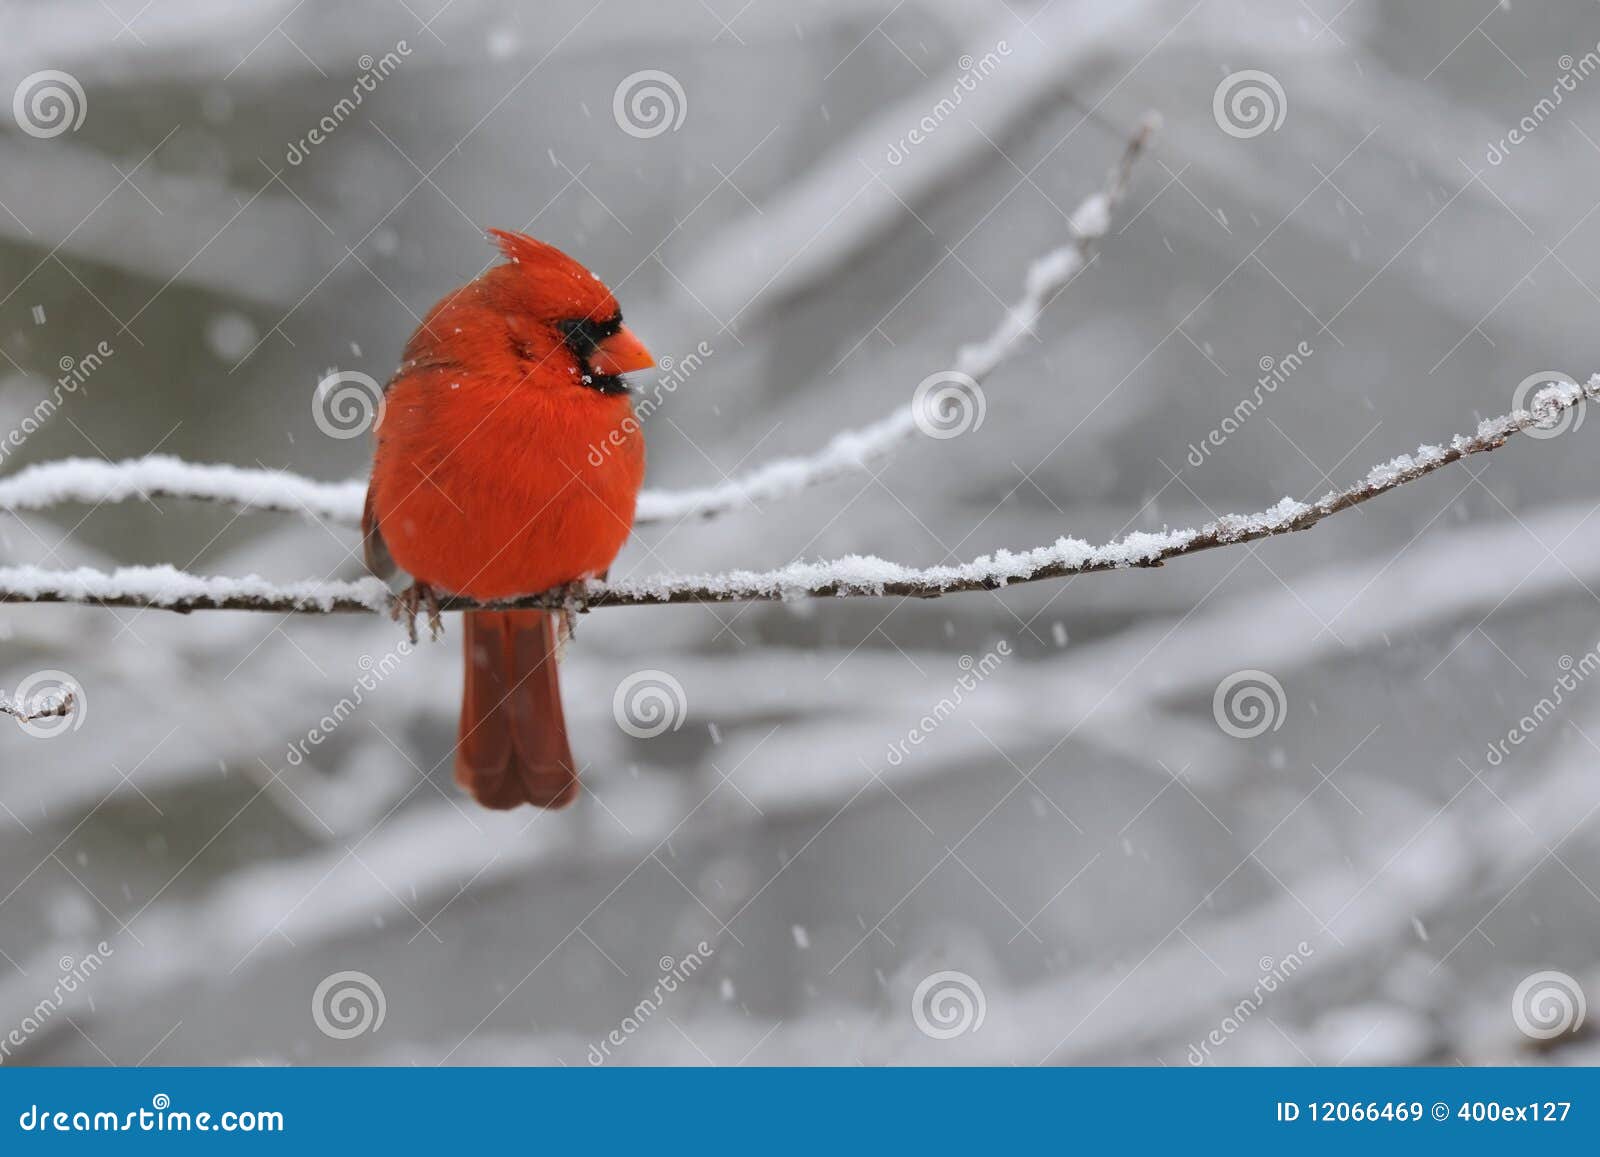 cardinal snow 1